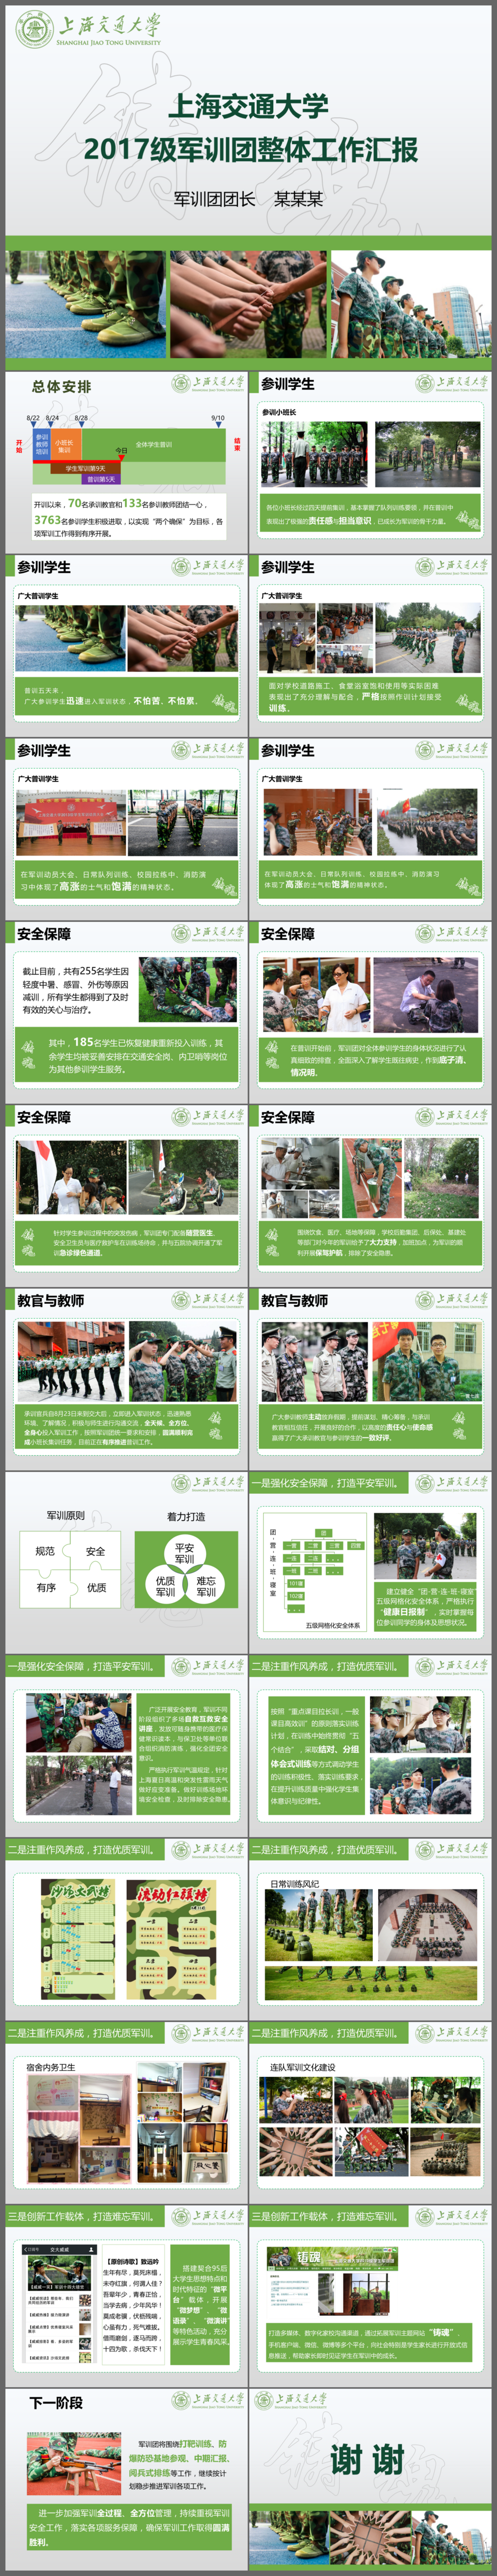 上海交通大学2017级军训团整体工作汇报PPT模板
